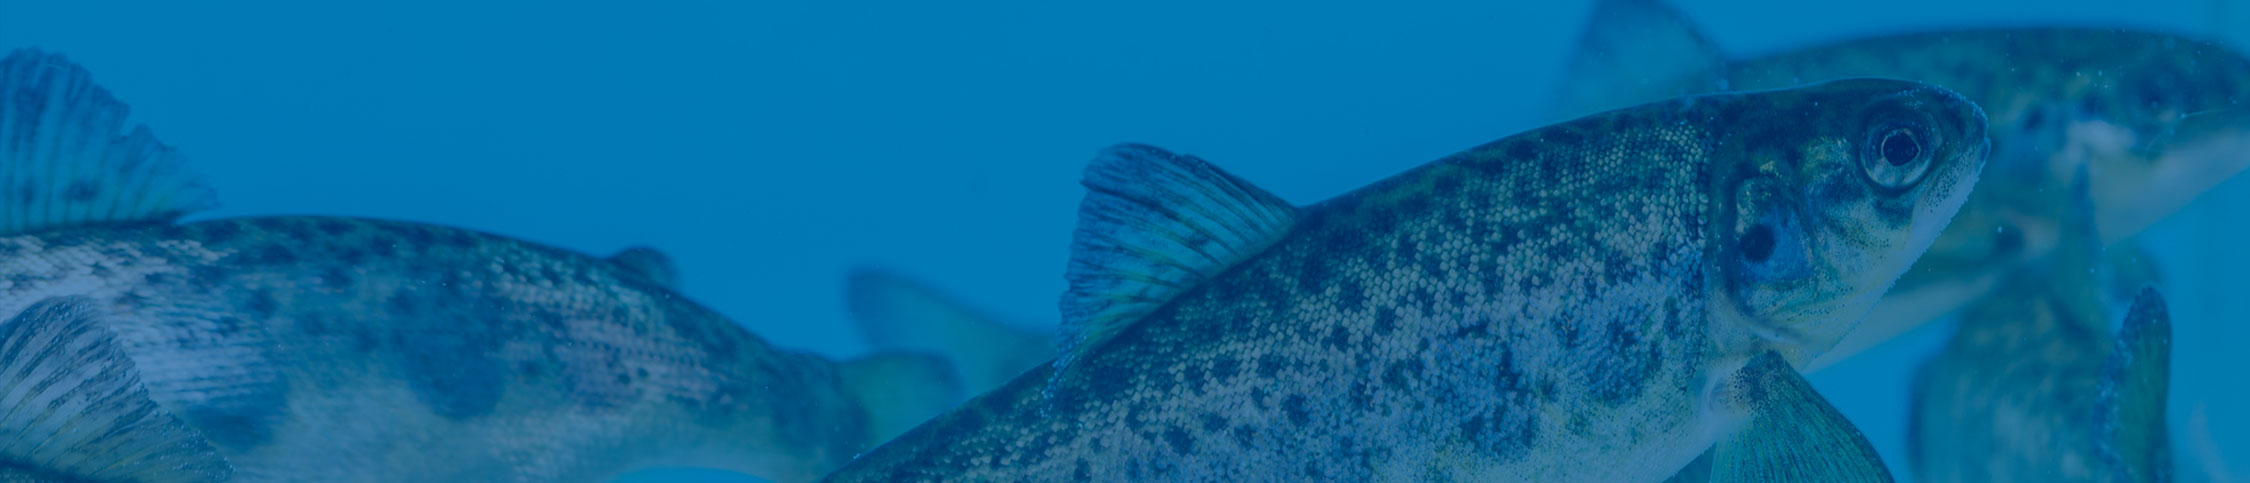 Sealand Aquaculture obtiene certificación internacional BAP